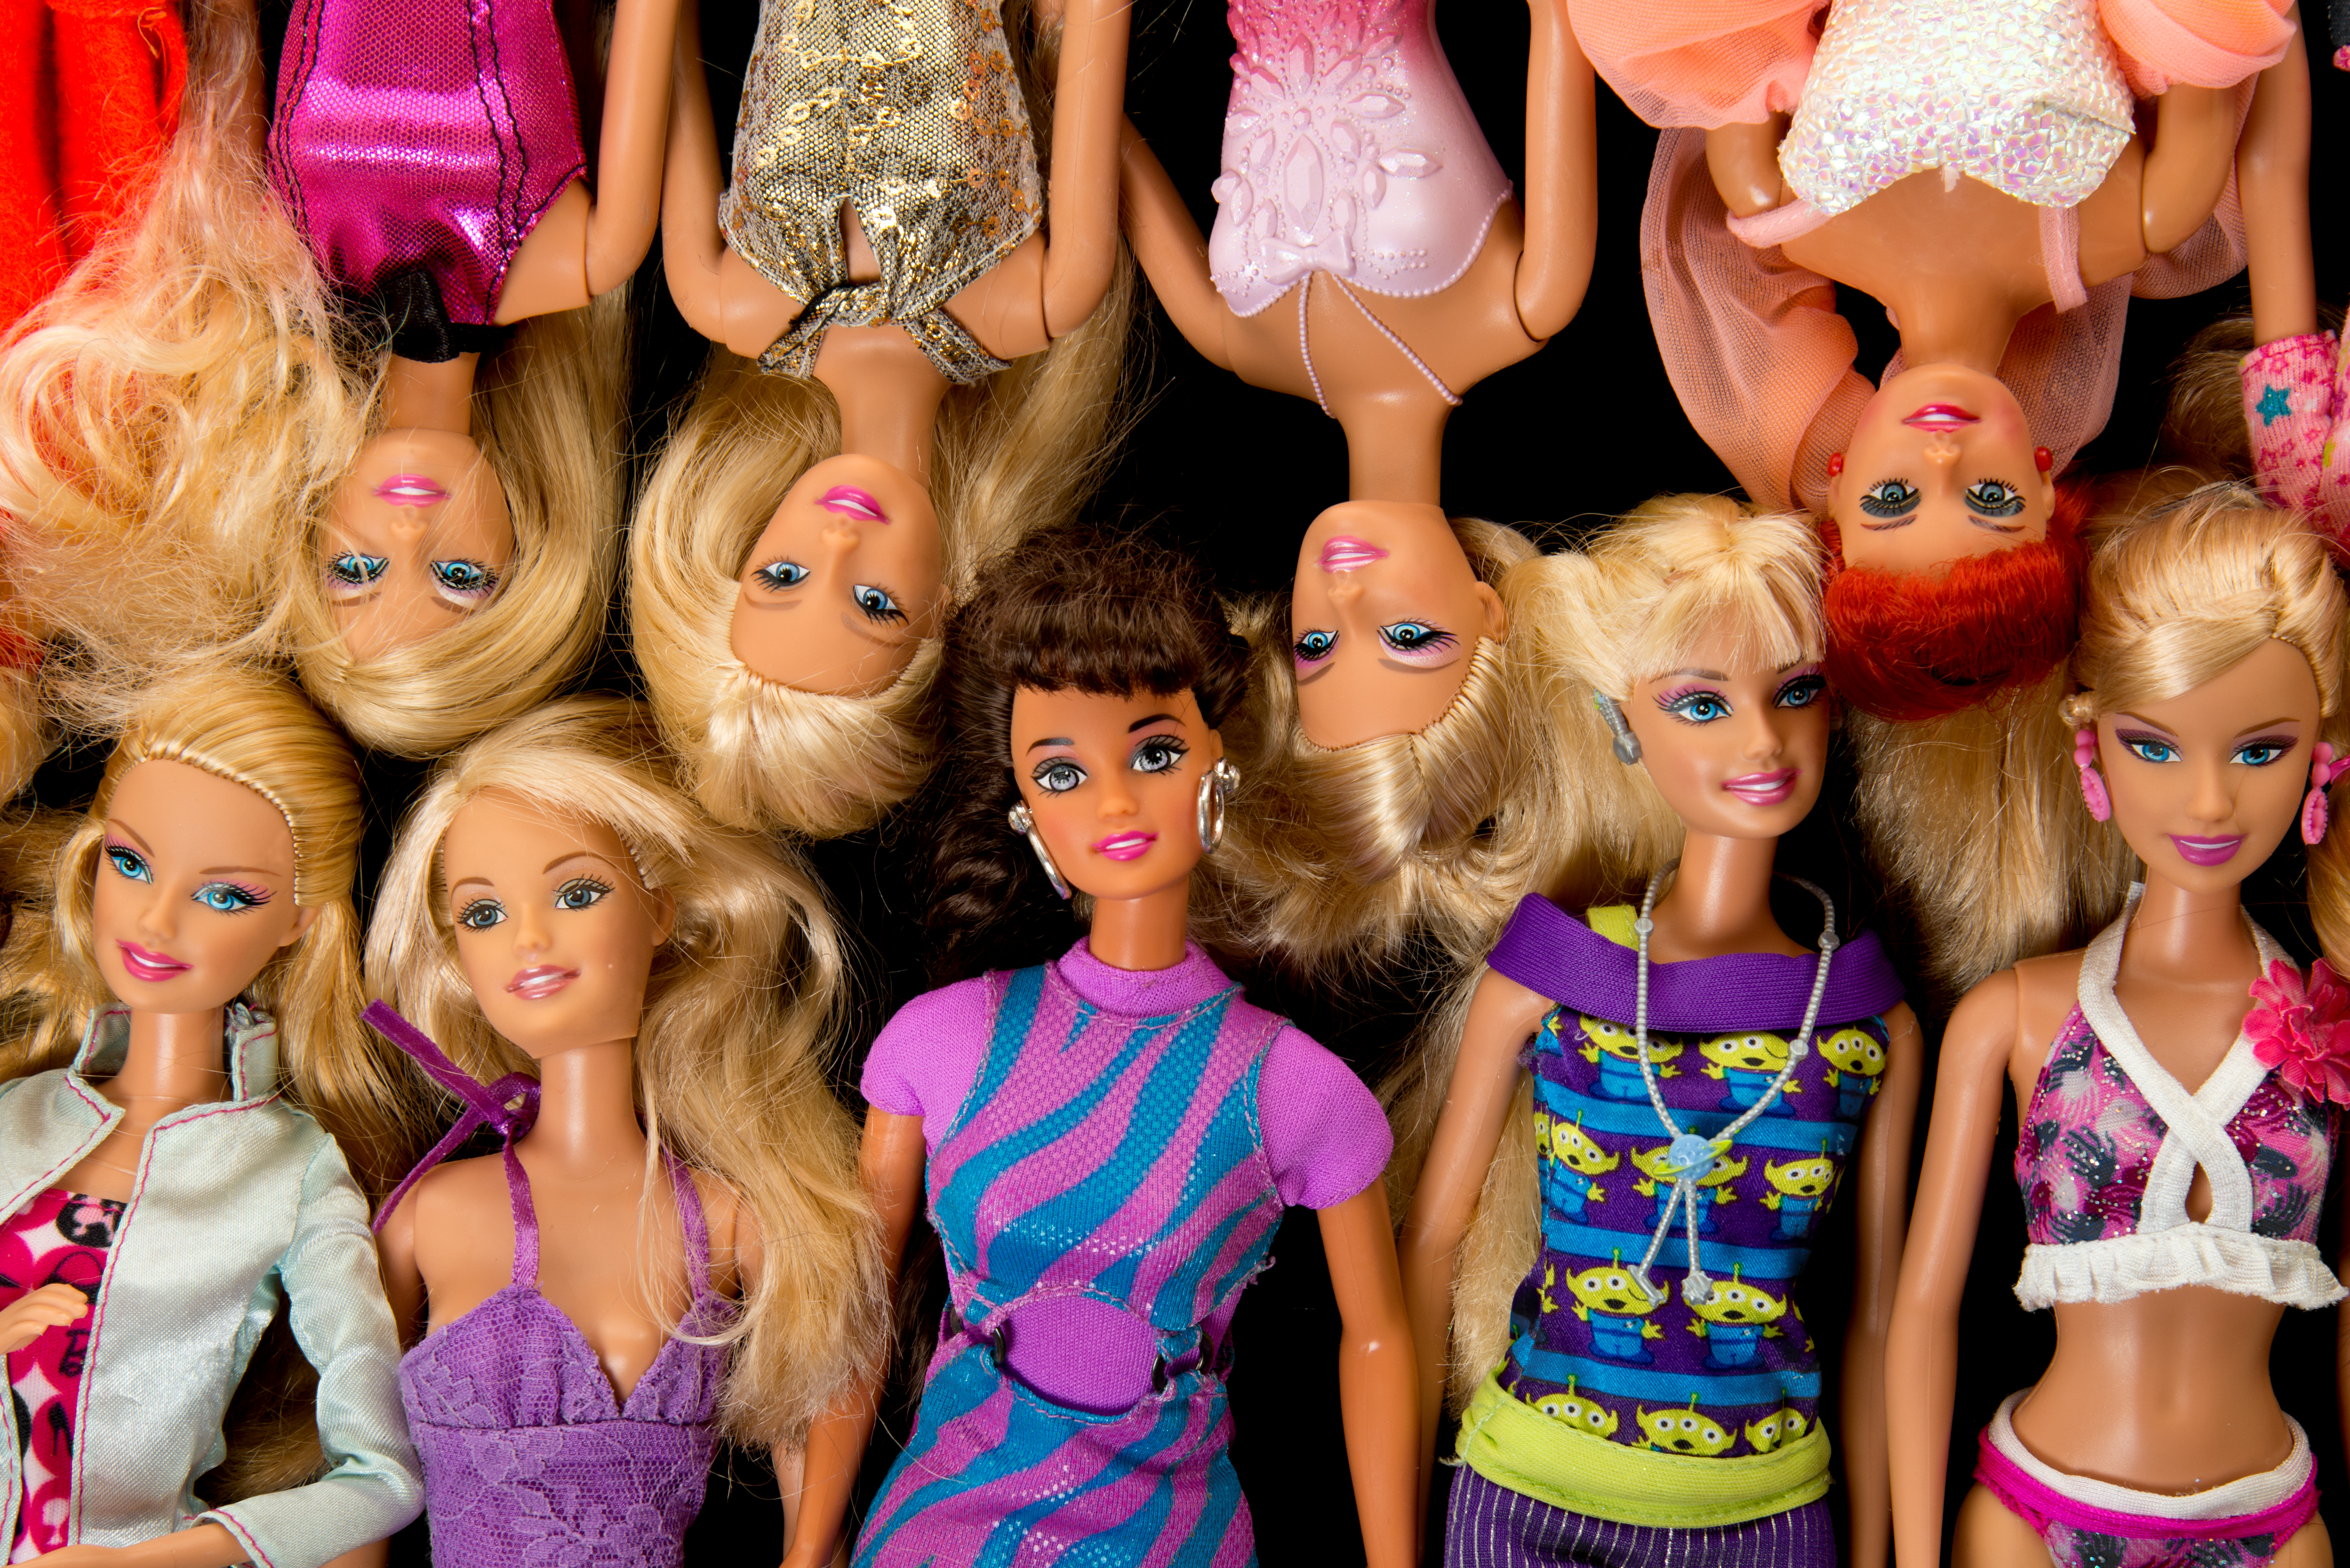 barbie dolls for sale online